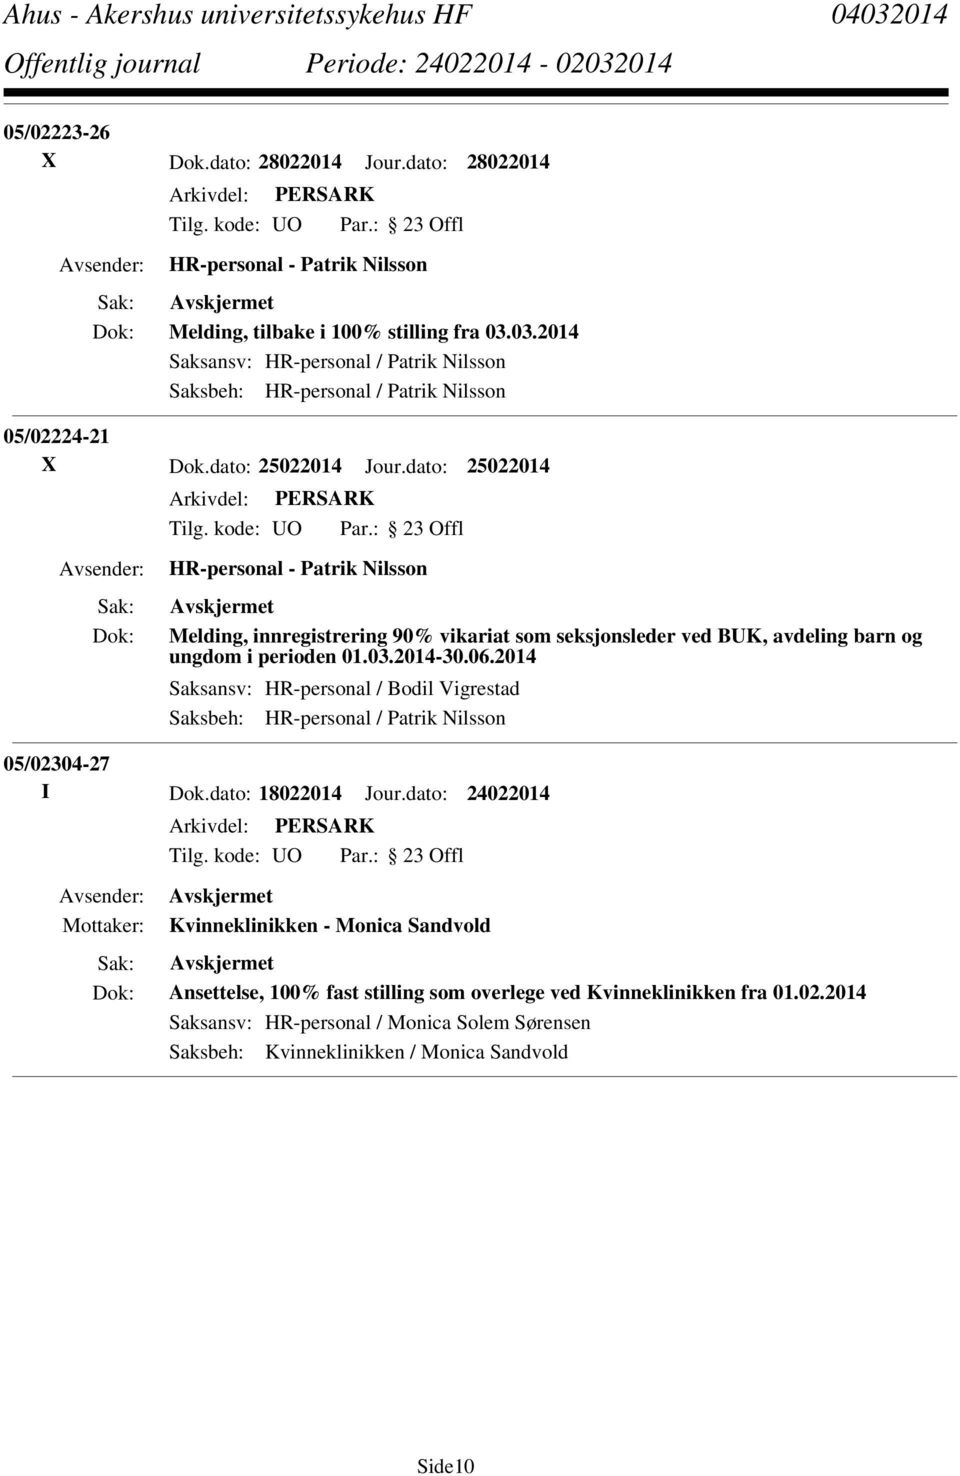 dato: 25022014 HR-personal - Patrik Nilsson Melding, innregistrering 90% vikariat som seksjonsleder ved BUK, avdeling barn og ungdom i perioden 01.03.2014-30.06.